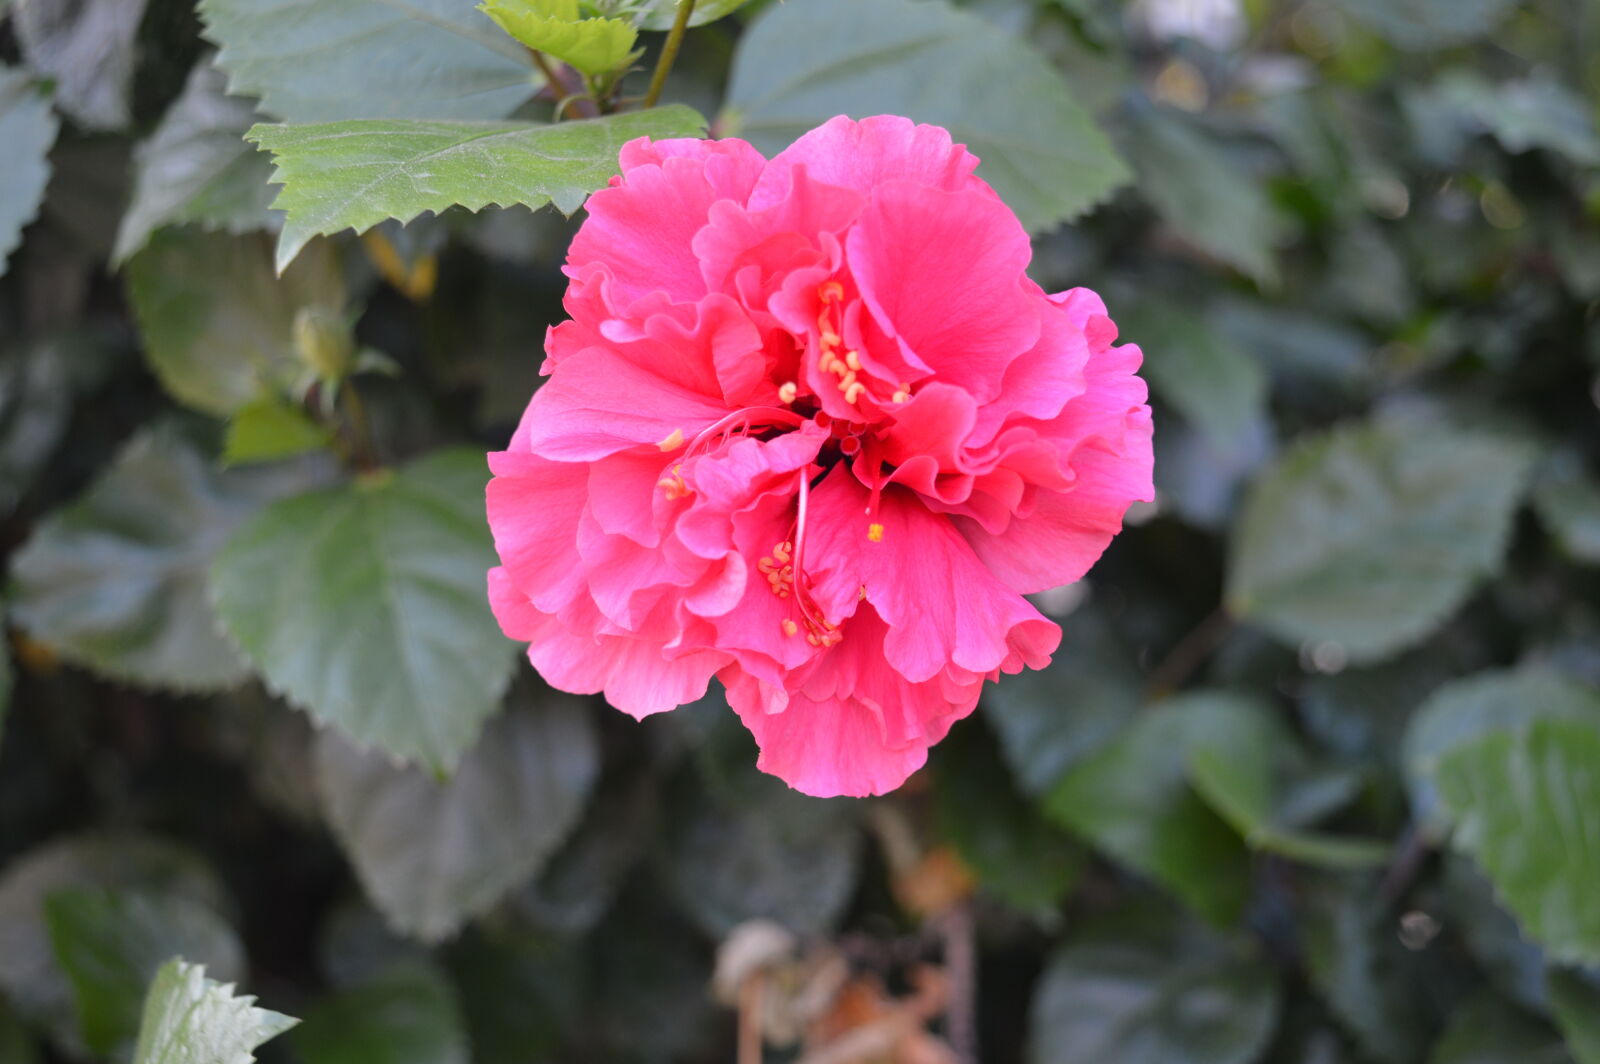 Nikon AF-S DX Nikkor 18-55mm F3.5-5.6G VR II sample photo. Beautiful, flowers, flower, pink photography